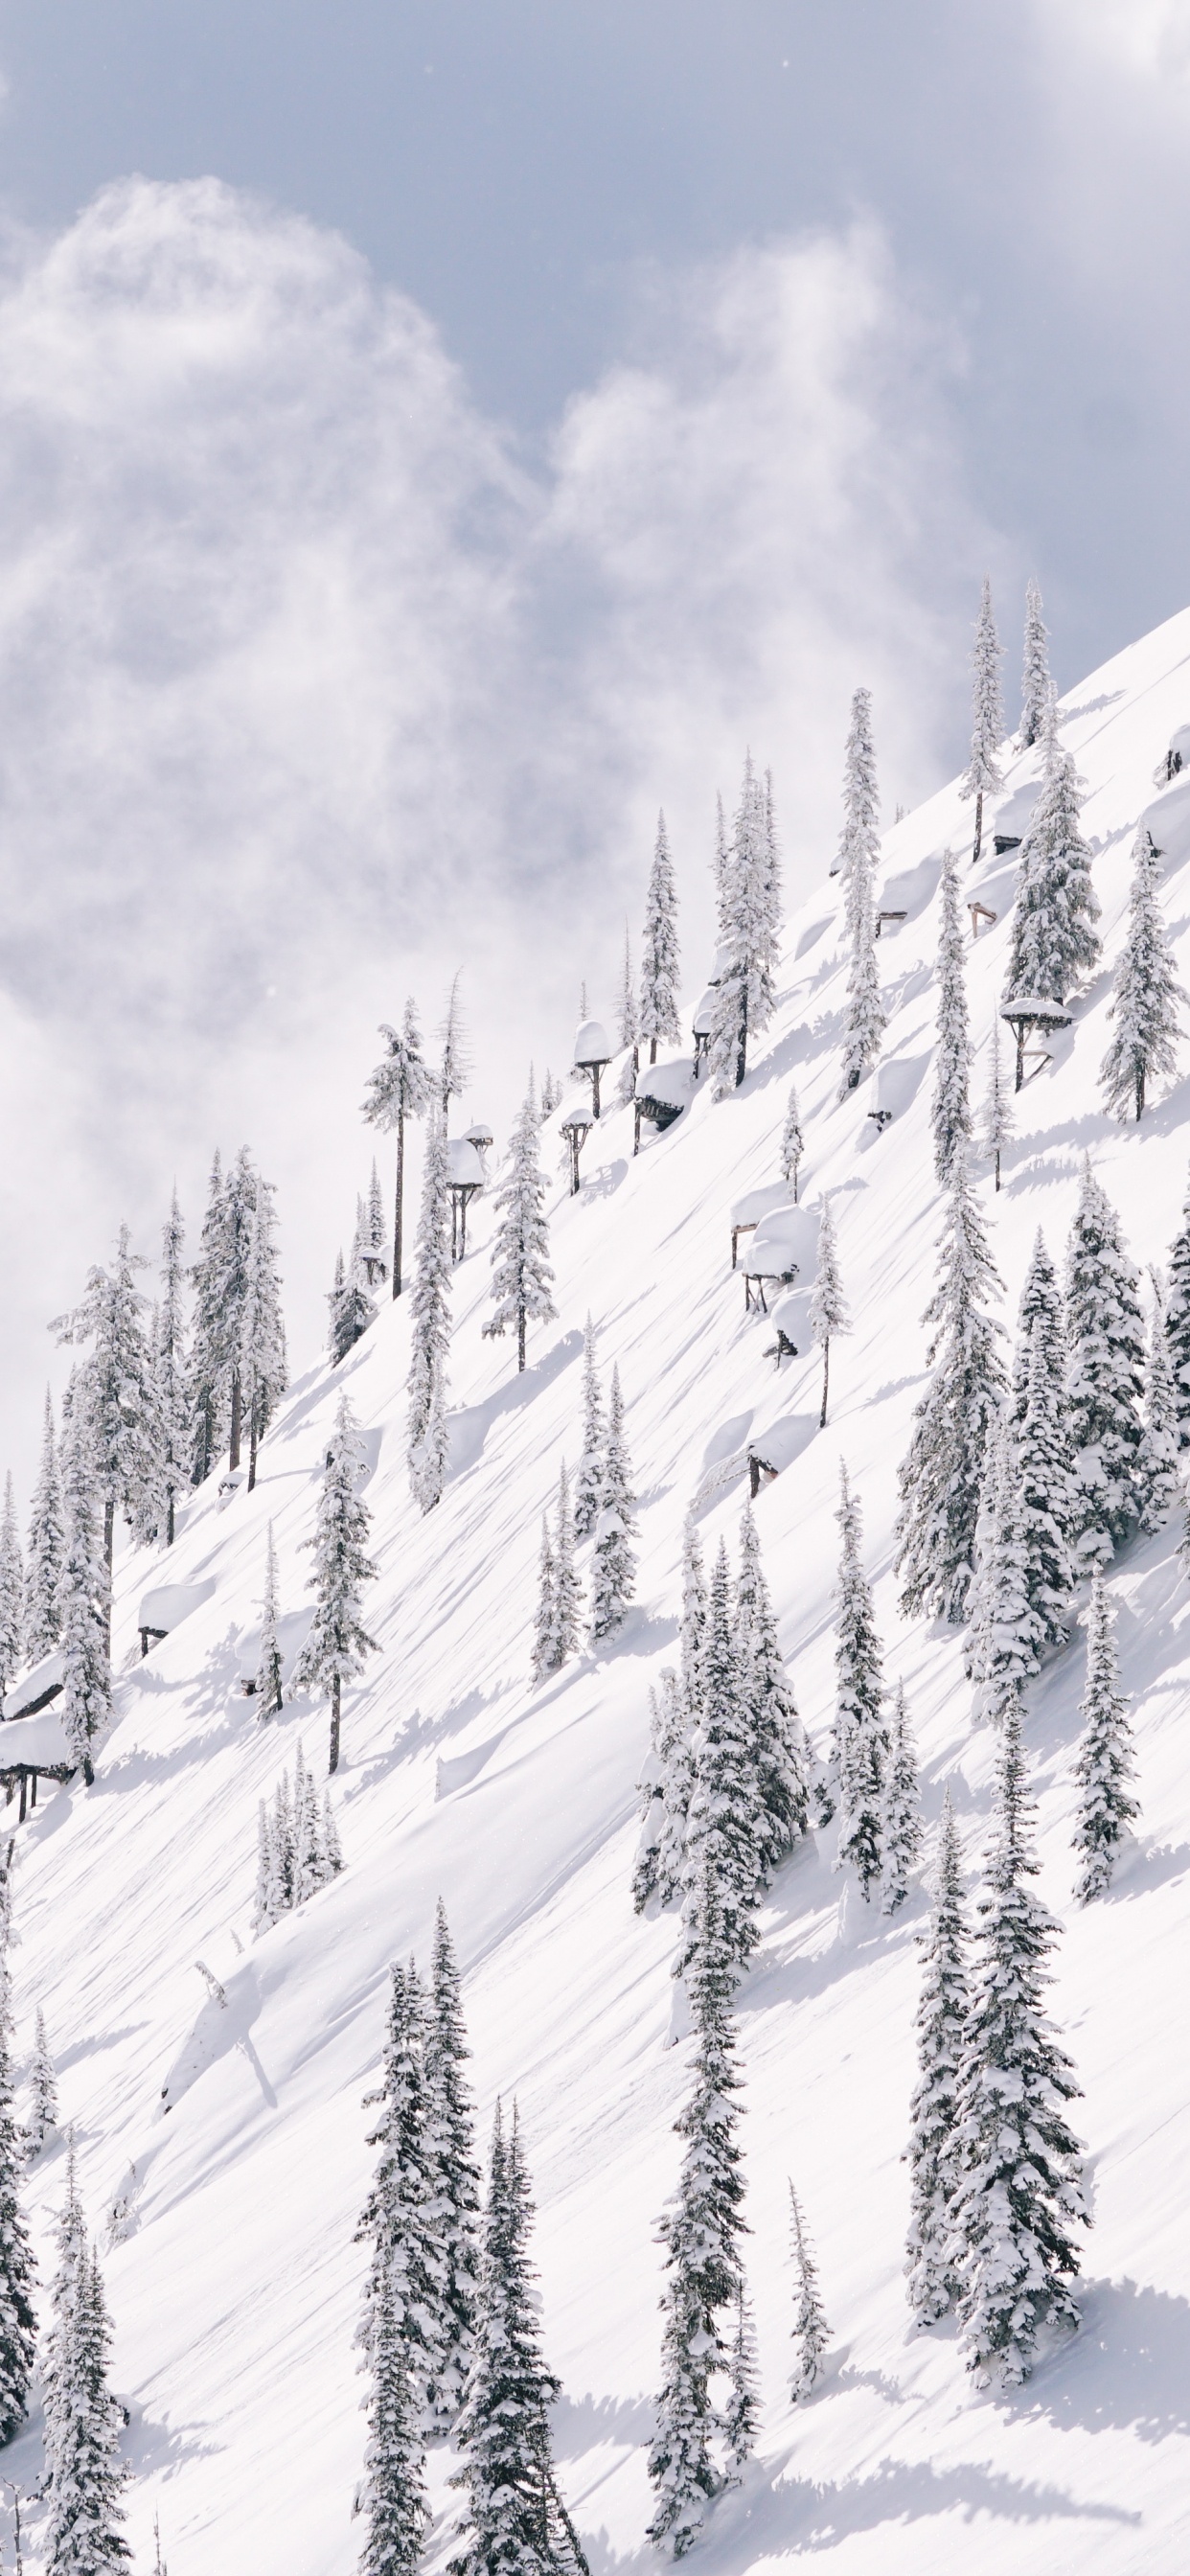 Schnee, Winter, Baum, Piste, Einfrieren. Wallpaper in 1242x2688 Resolution